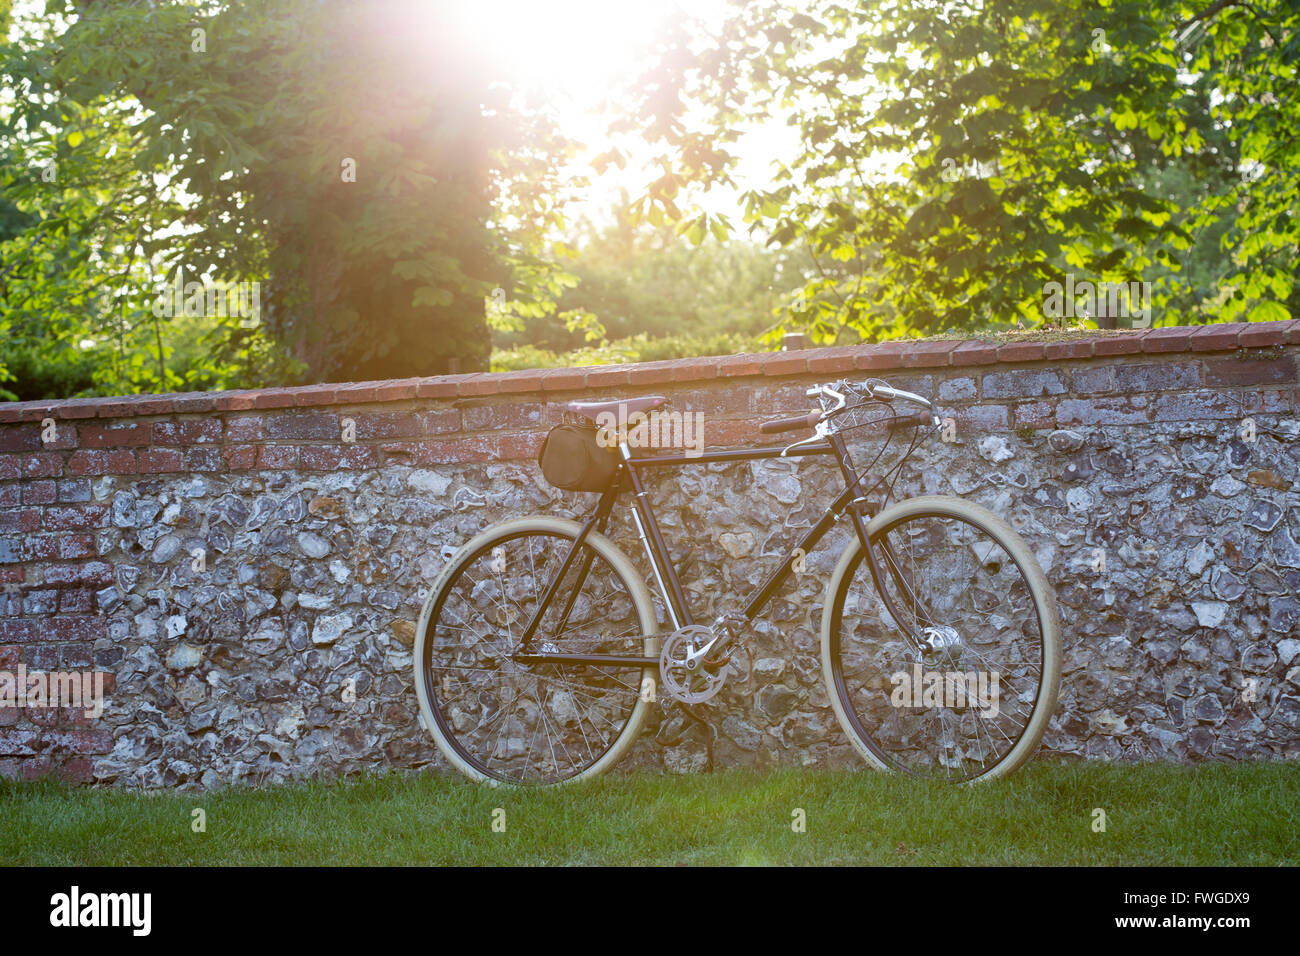 Un style vintage racer bike s'appuya contre un mur de briques et silex Banque D'Images